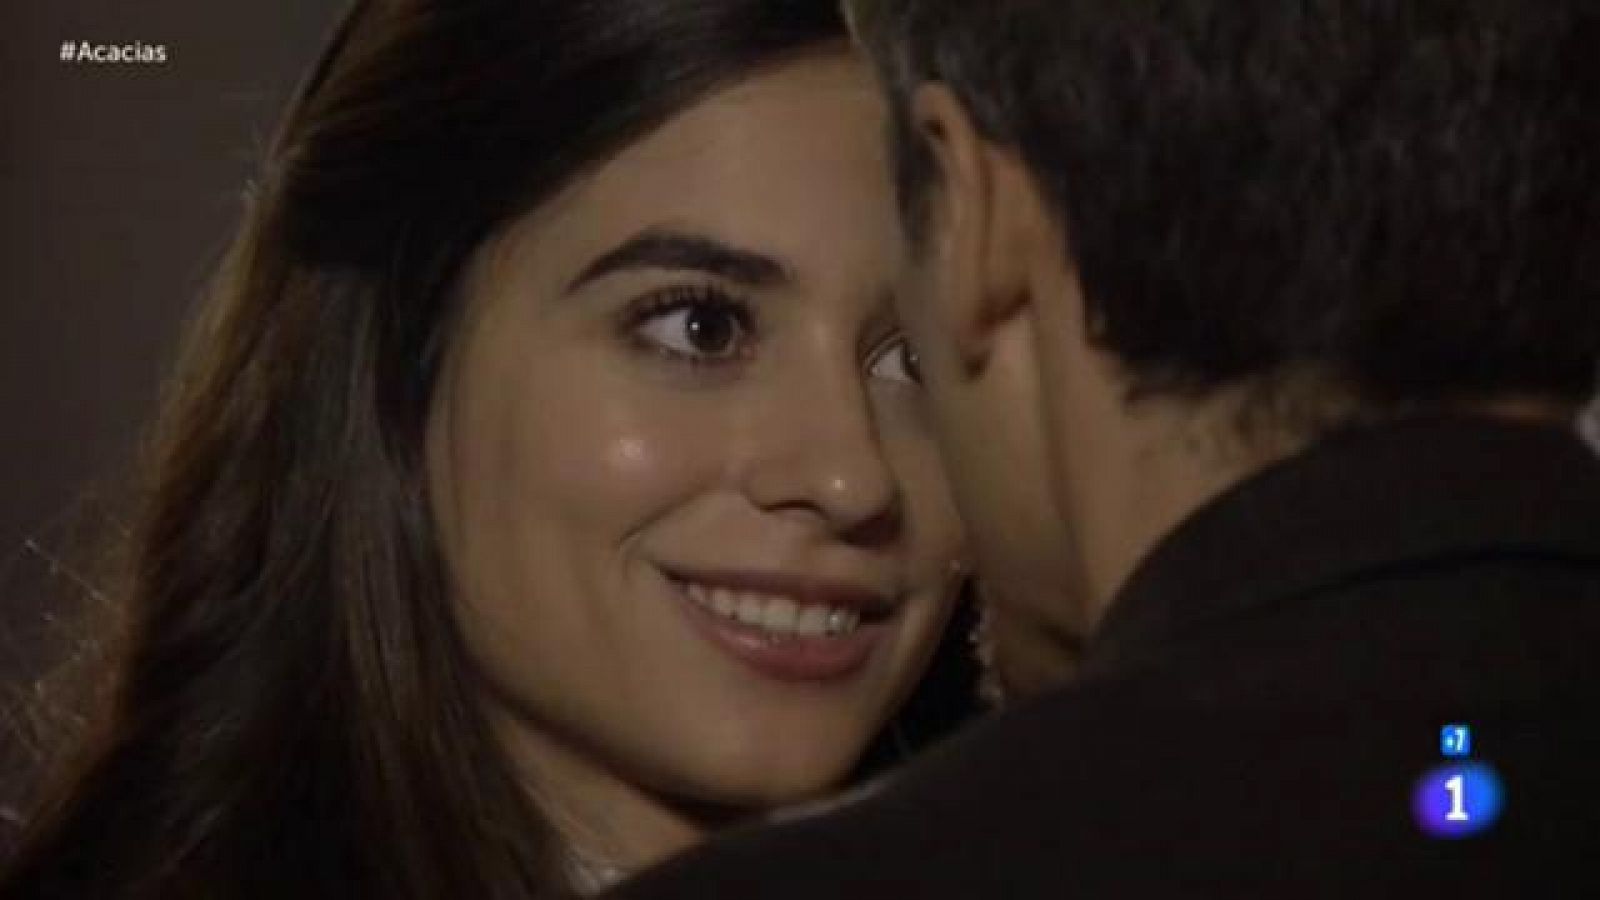 Acacias 38 - Mauro y Teresa se declaran su amor